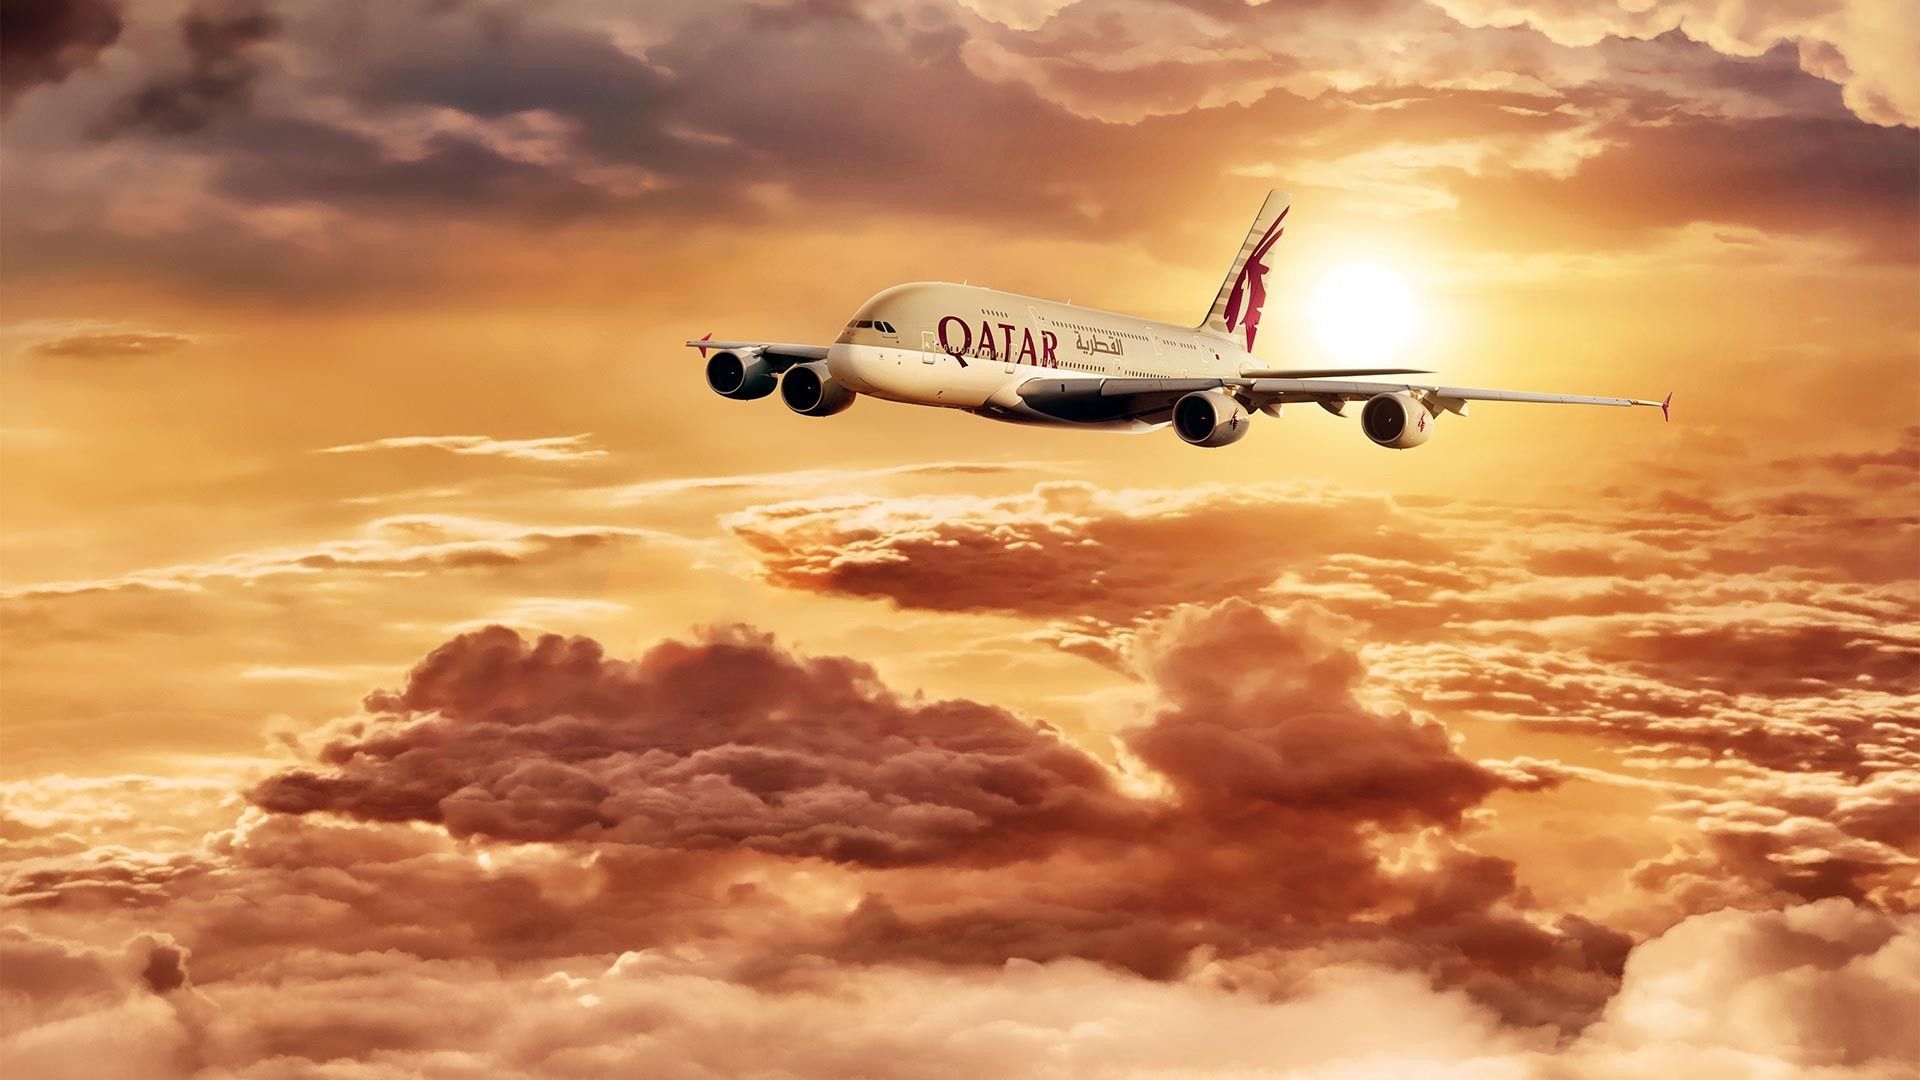 Qatar Airways Wallpaper Free Qatar Airways Background